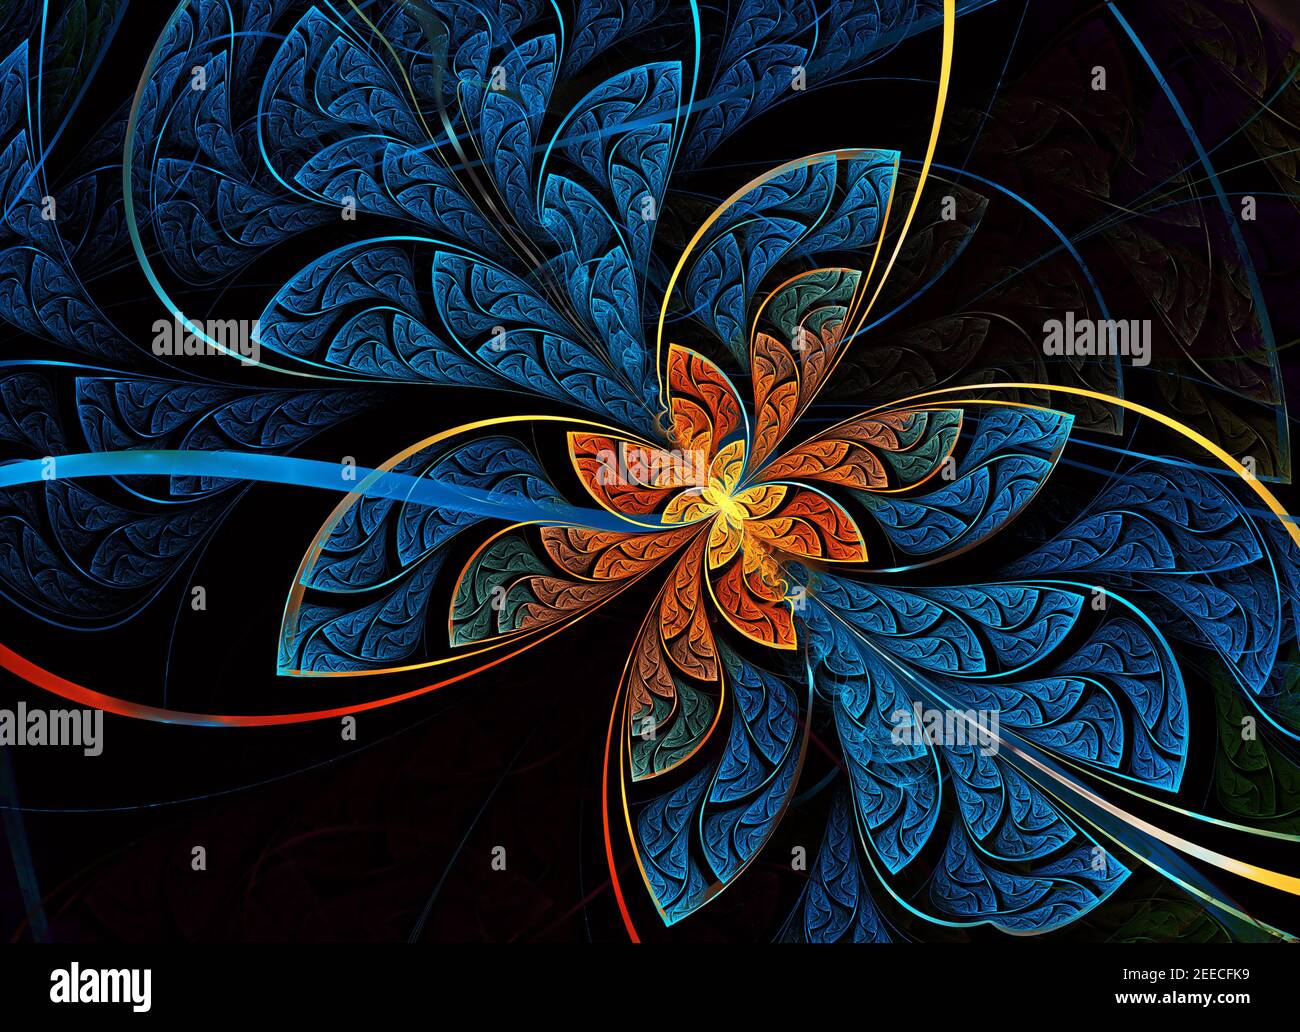 Mehrfarbige symmetrische Fraktal-Muster als Blume oder Schmetterling in Buntglas-Fenster-Stil. Computergenerierte Grafiken. Stockfoto